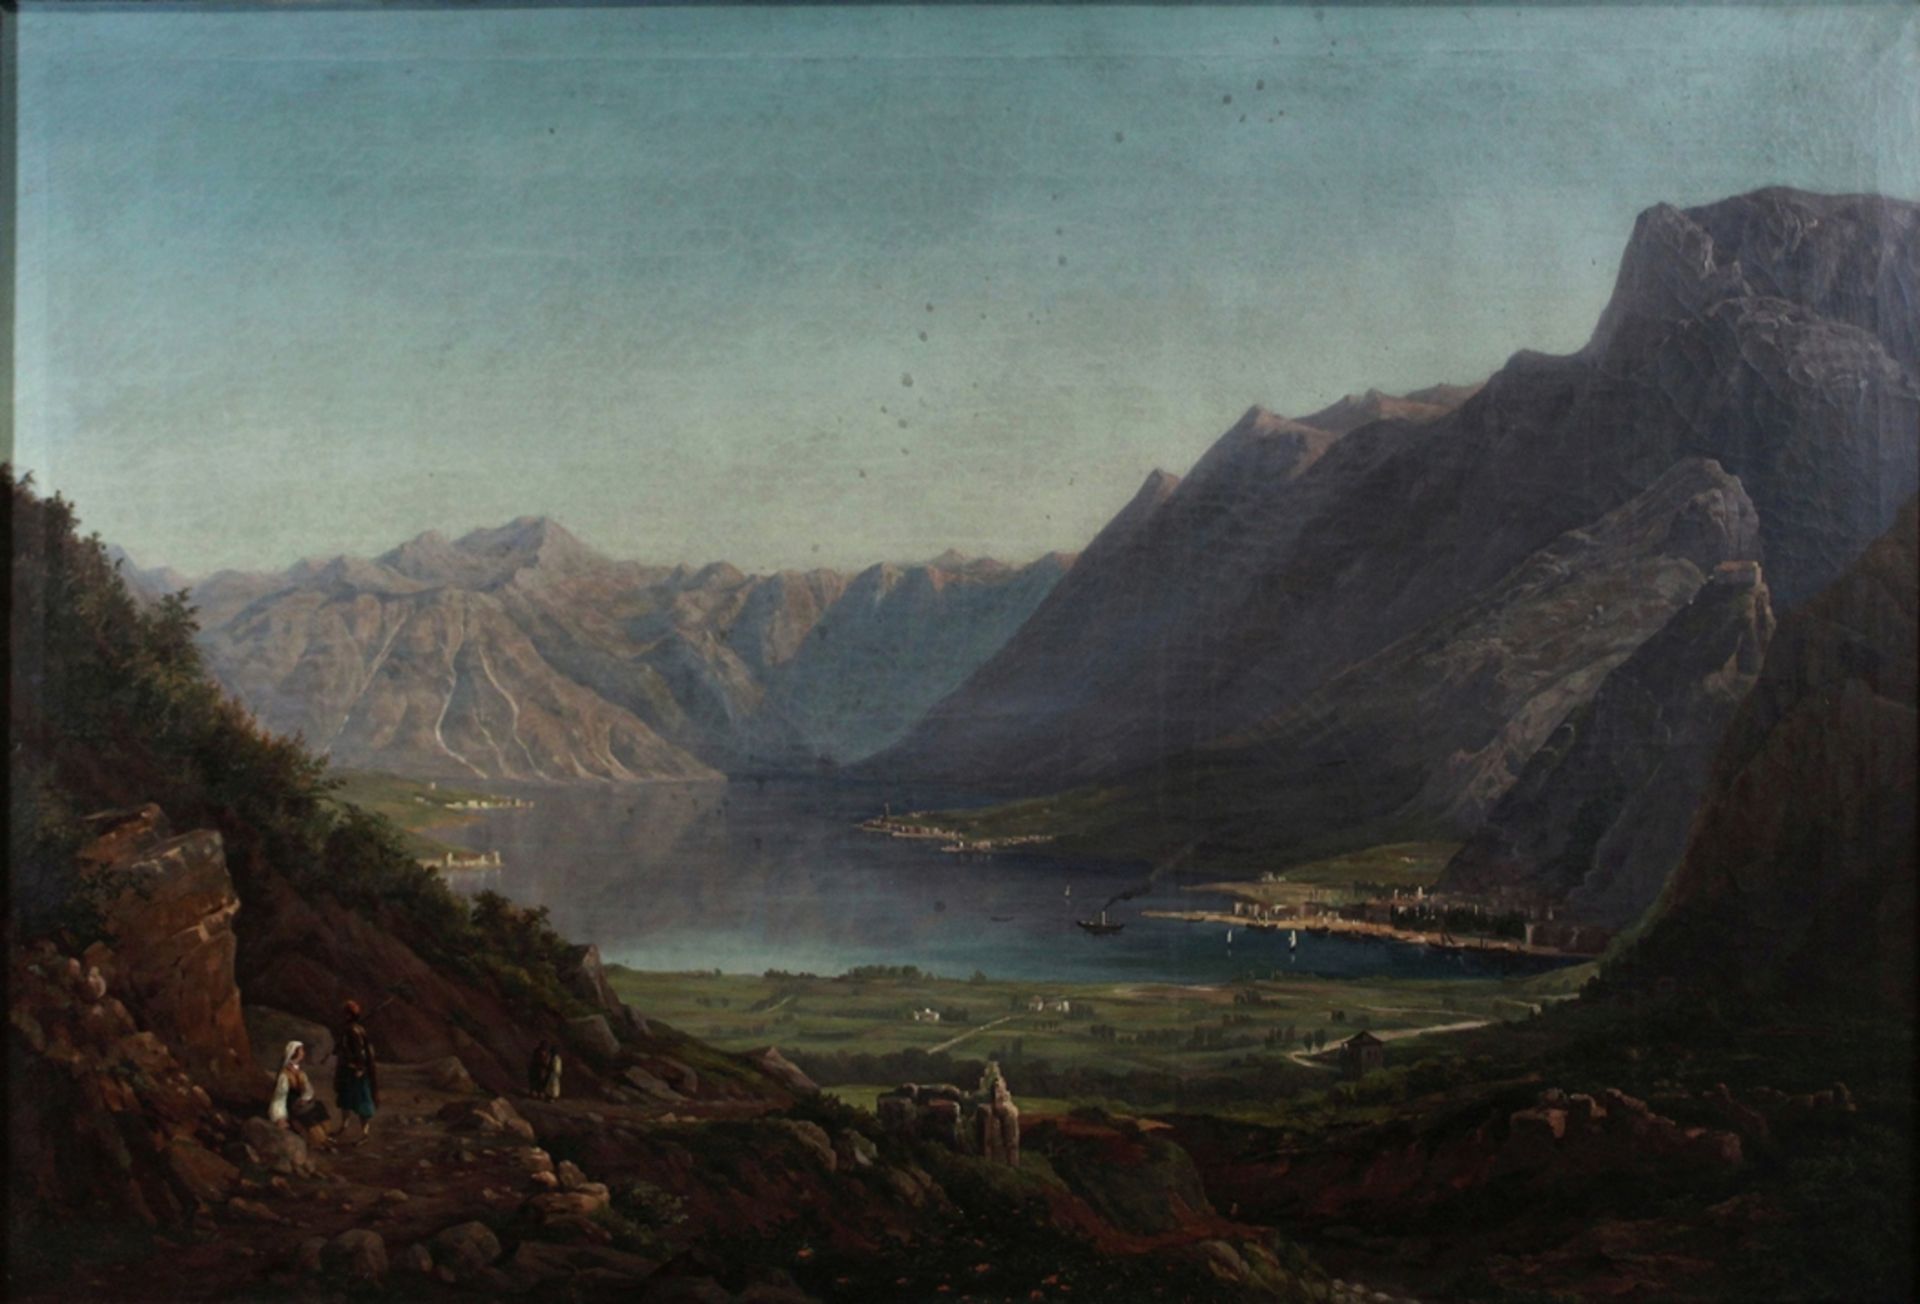 Unbekannter Künstler. Landschaft. Um Ende 19. Jahrhundert. Öl auf Leinwand. Freier Blick auf ein Be